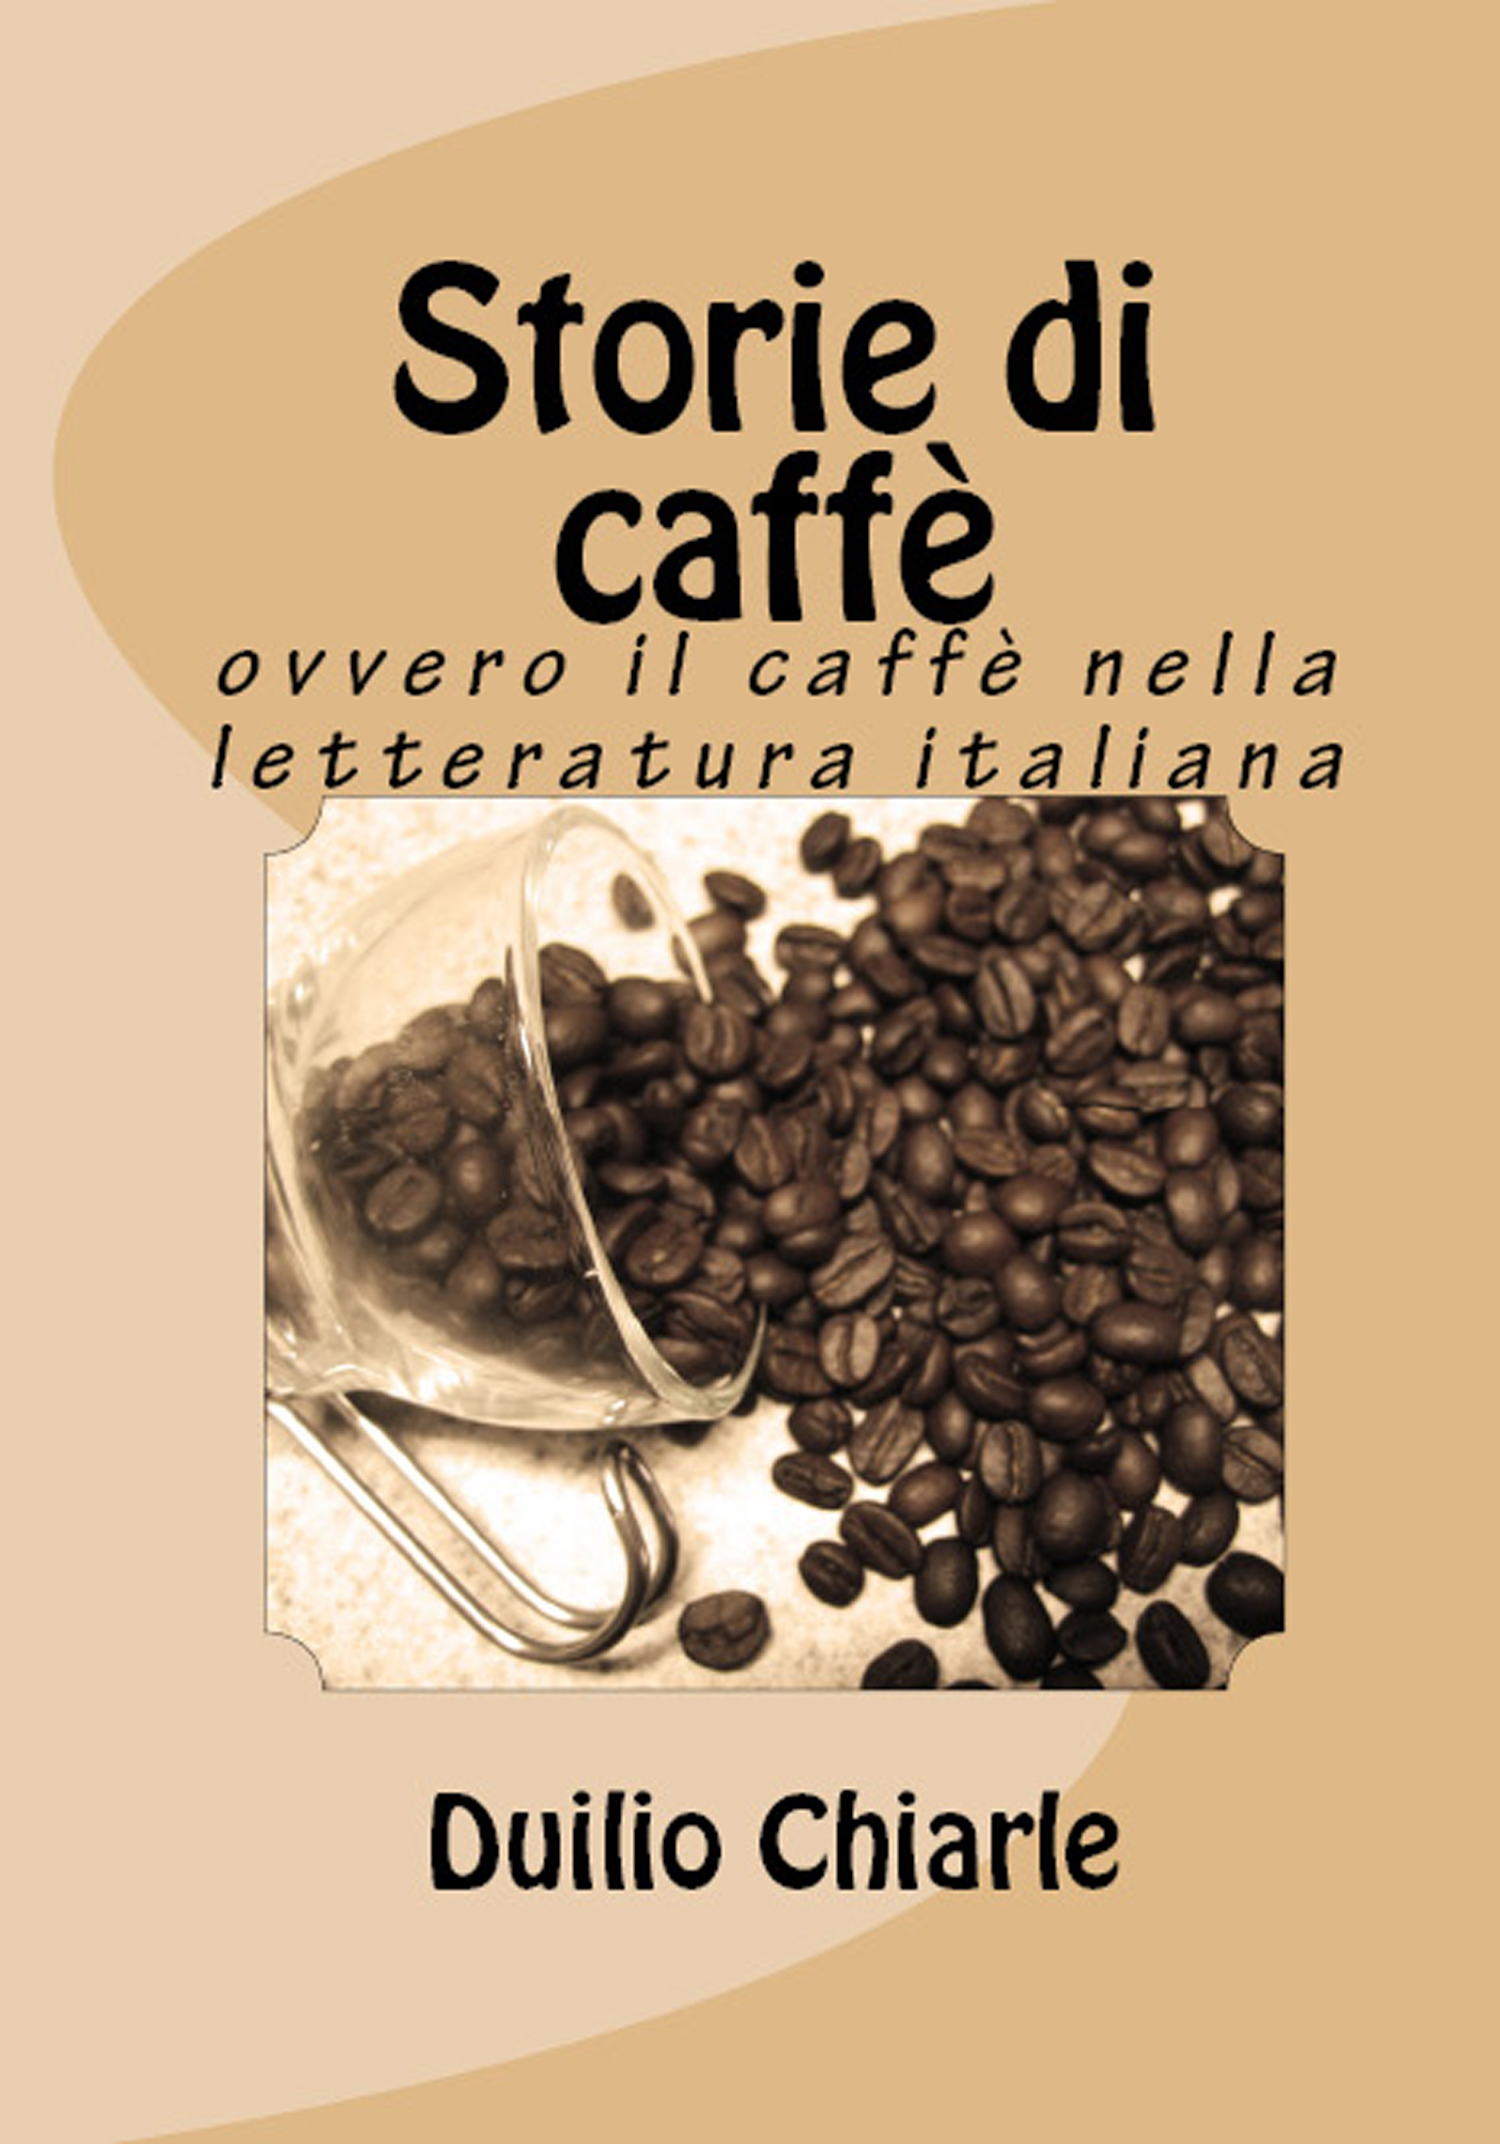 Storie di caffè ovvero il caffè nella letteratura italiana)